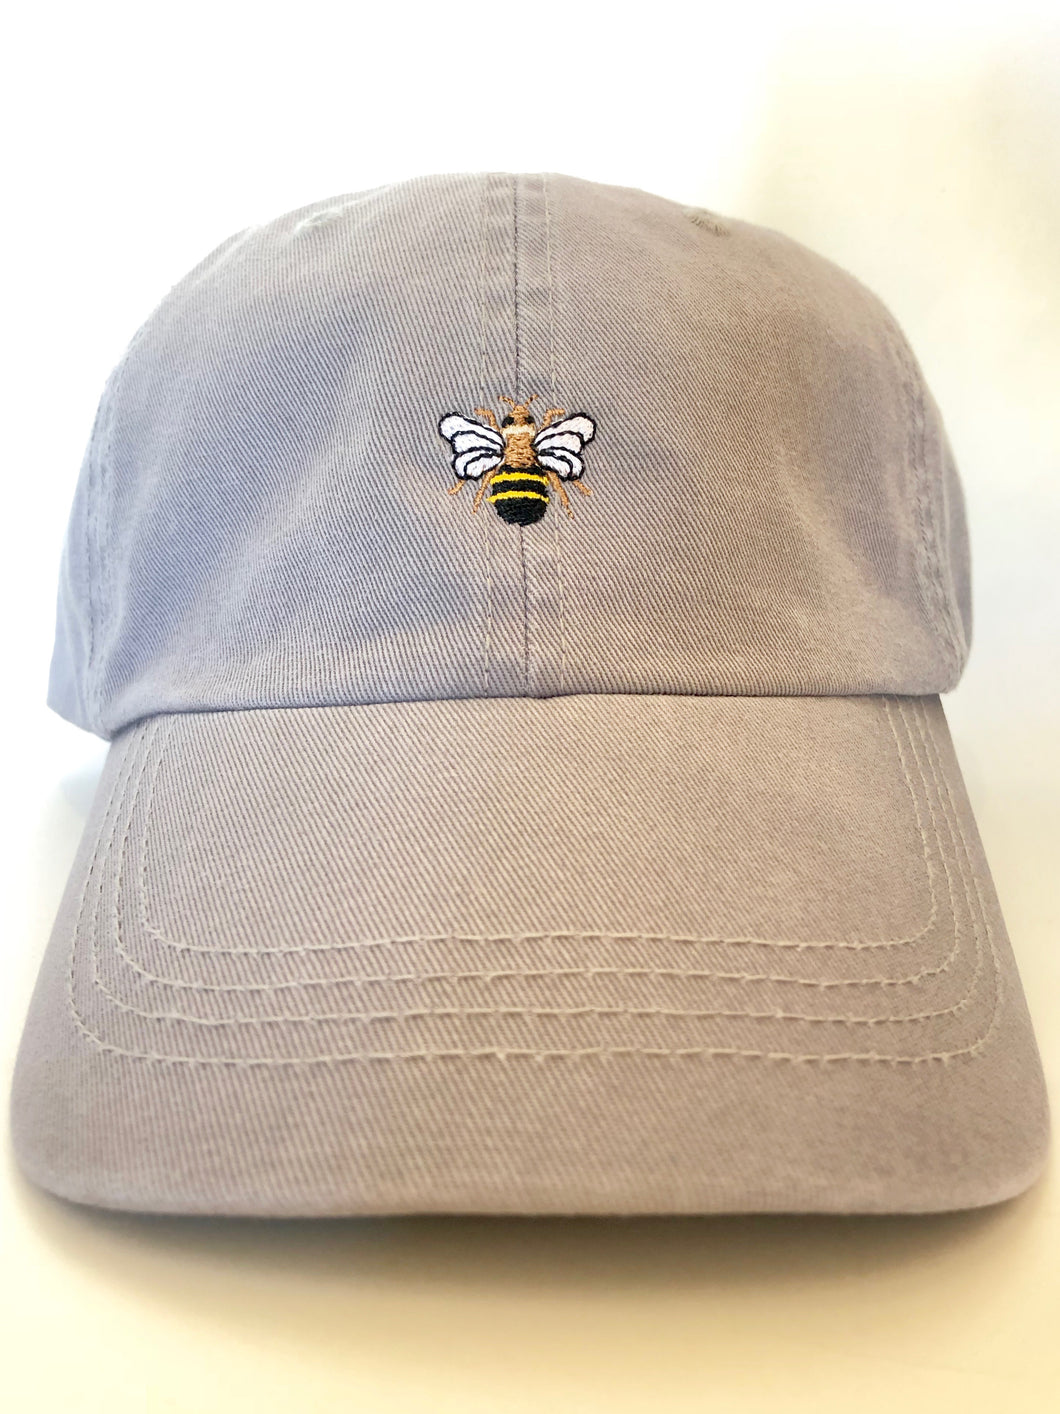 honeybee hat